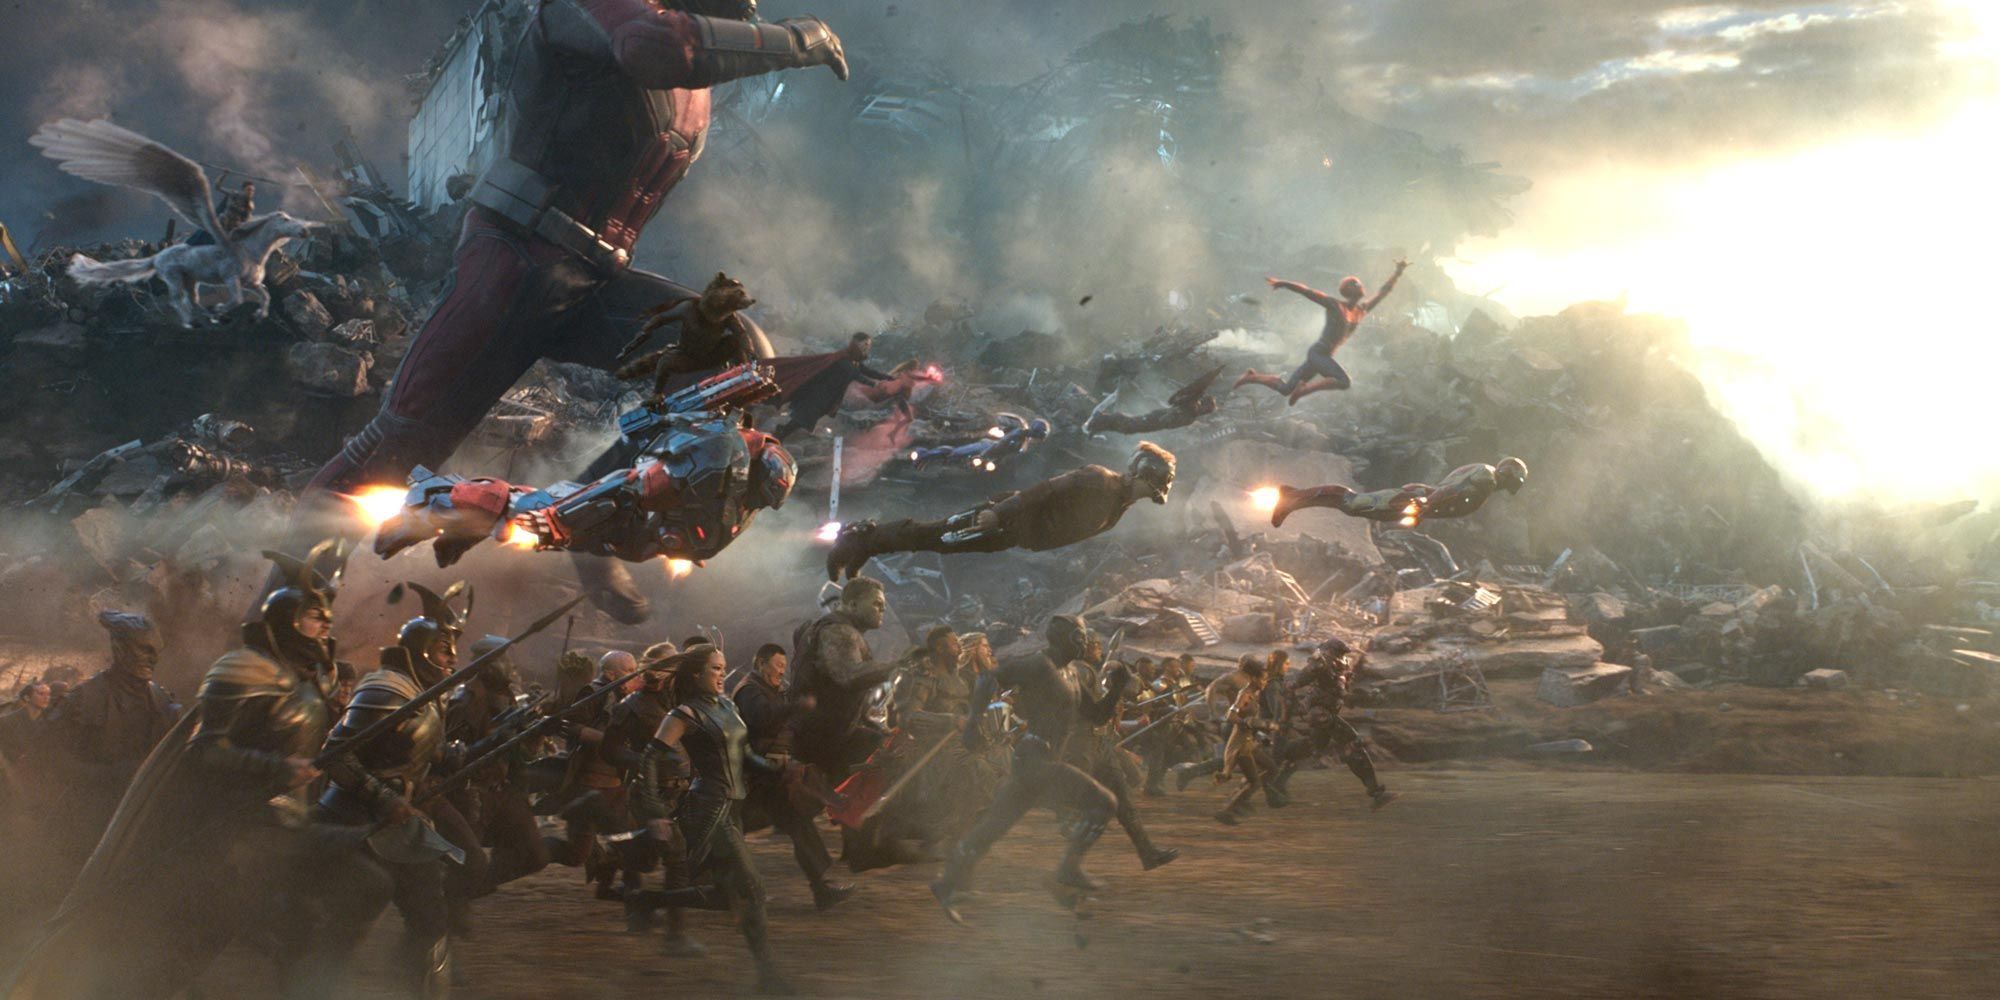 The Avengers taking flight during the last fight in Avenger: Endgame.